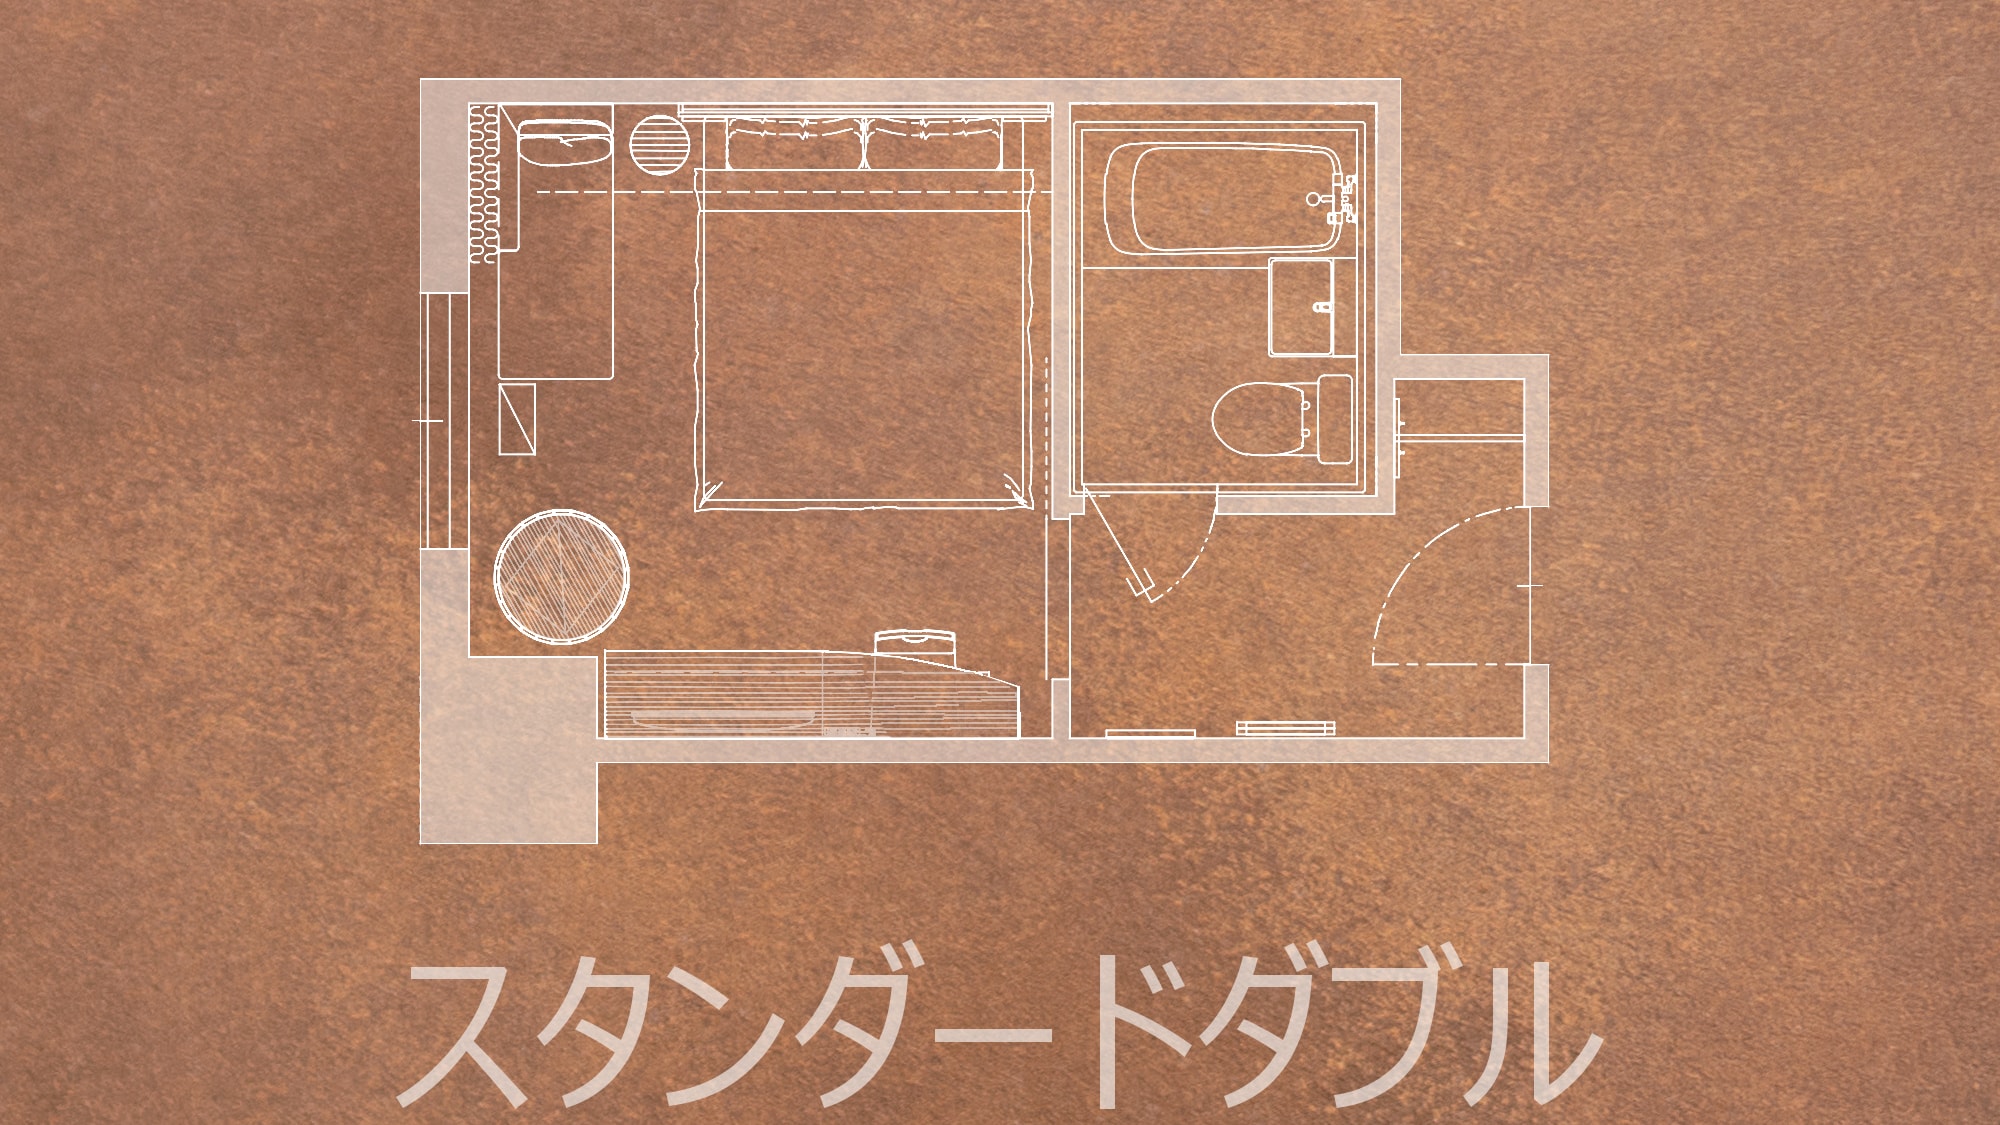 Standard double (floor plan)